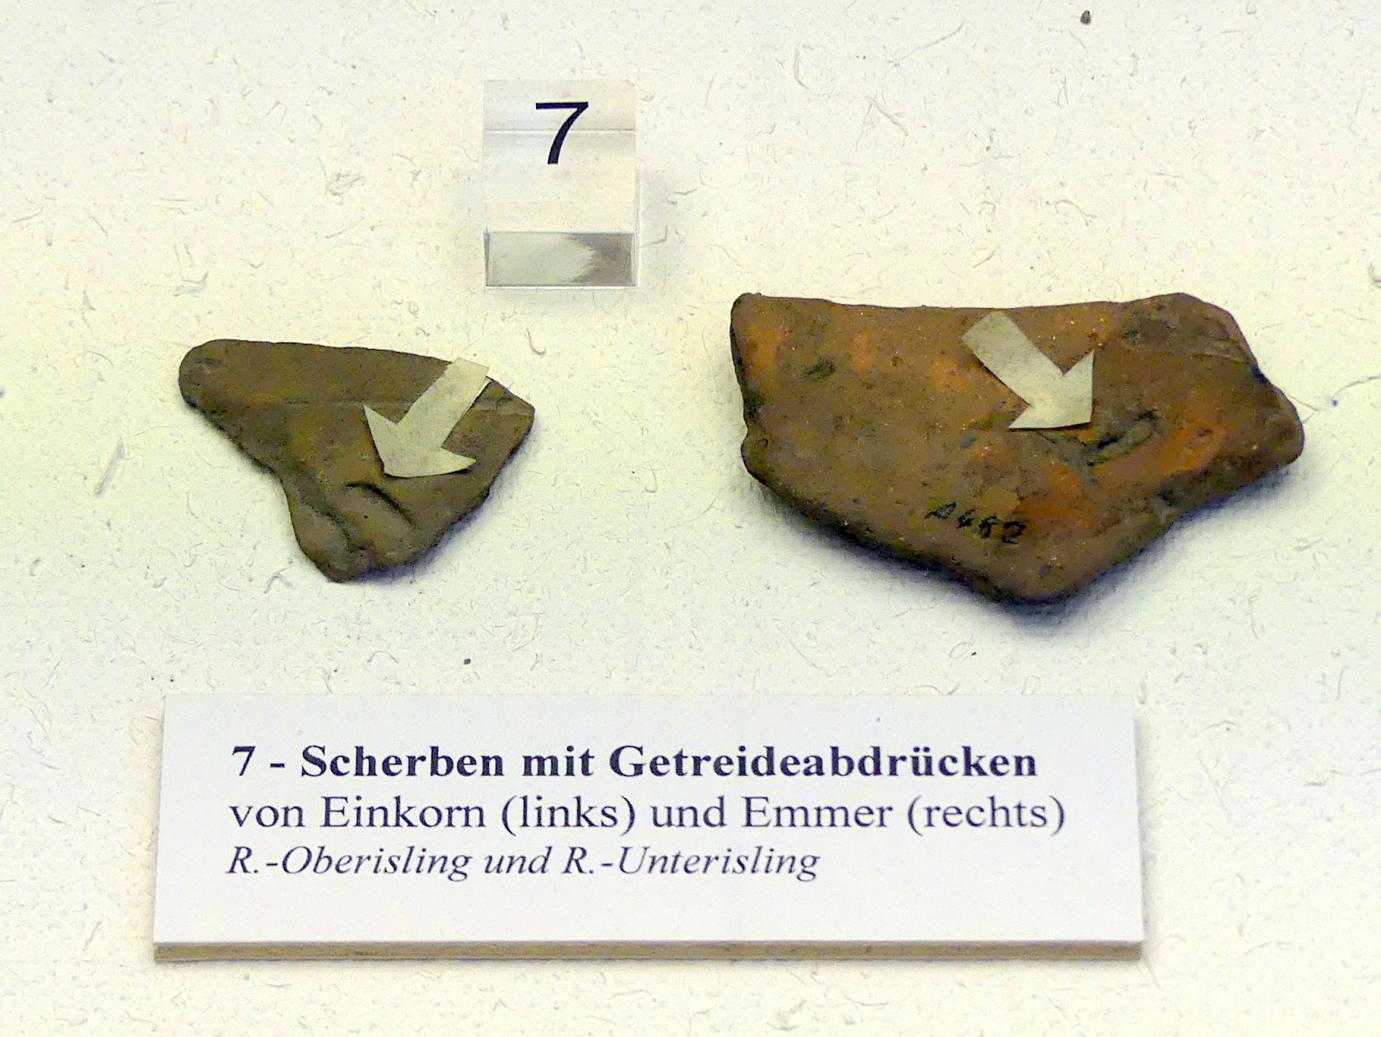 Scherben mit Getreideabdrücken, Frühneolithikum (Altneolithikum), 5500 - 4900 v. Chr.